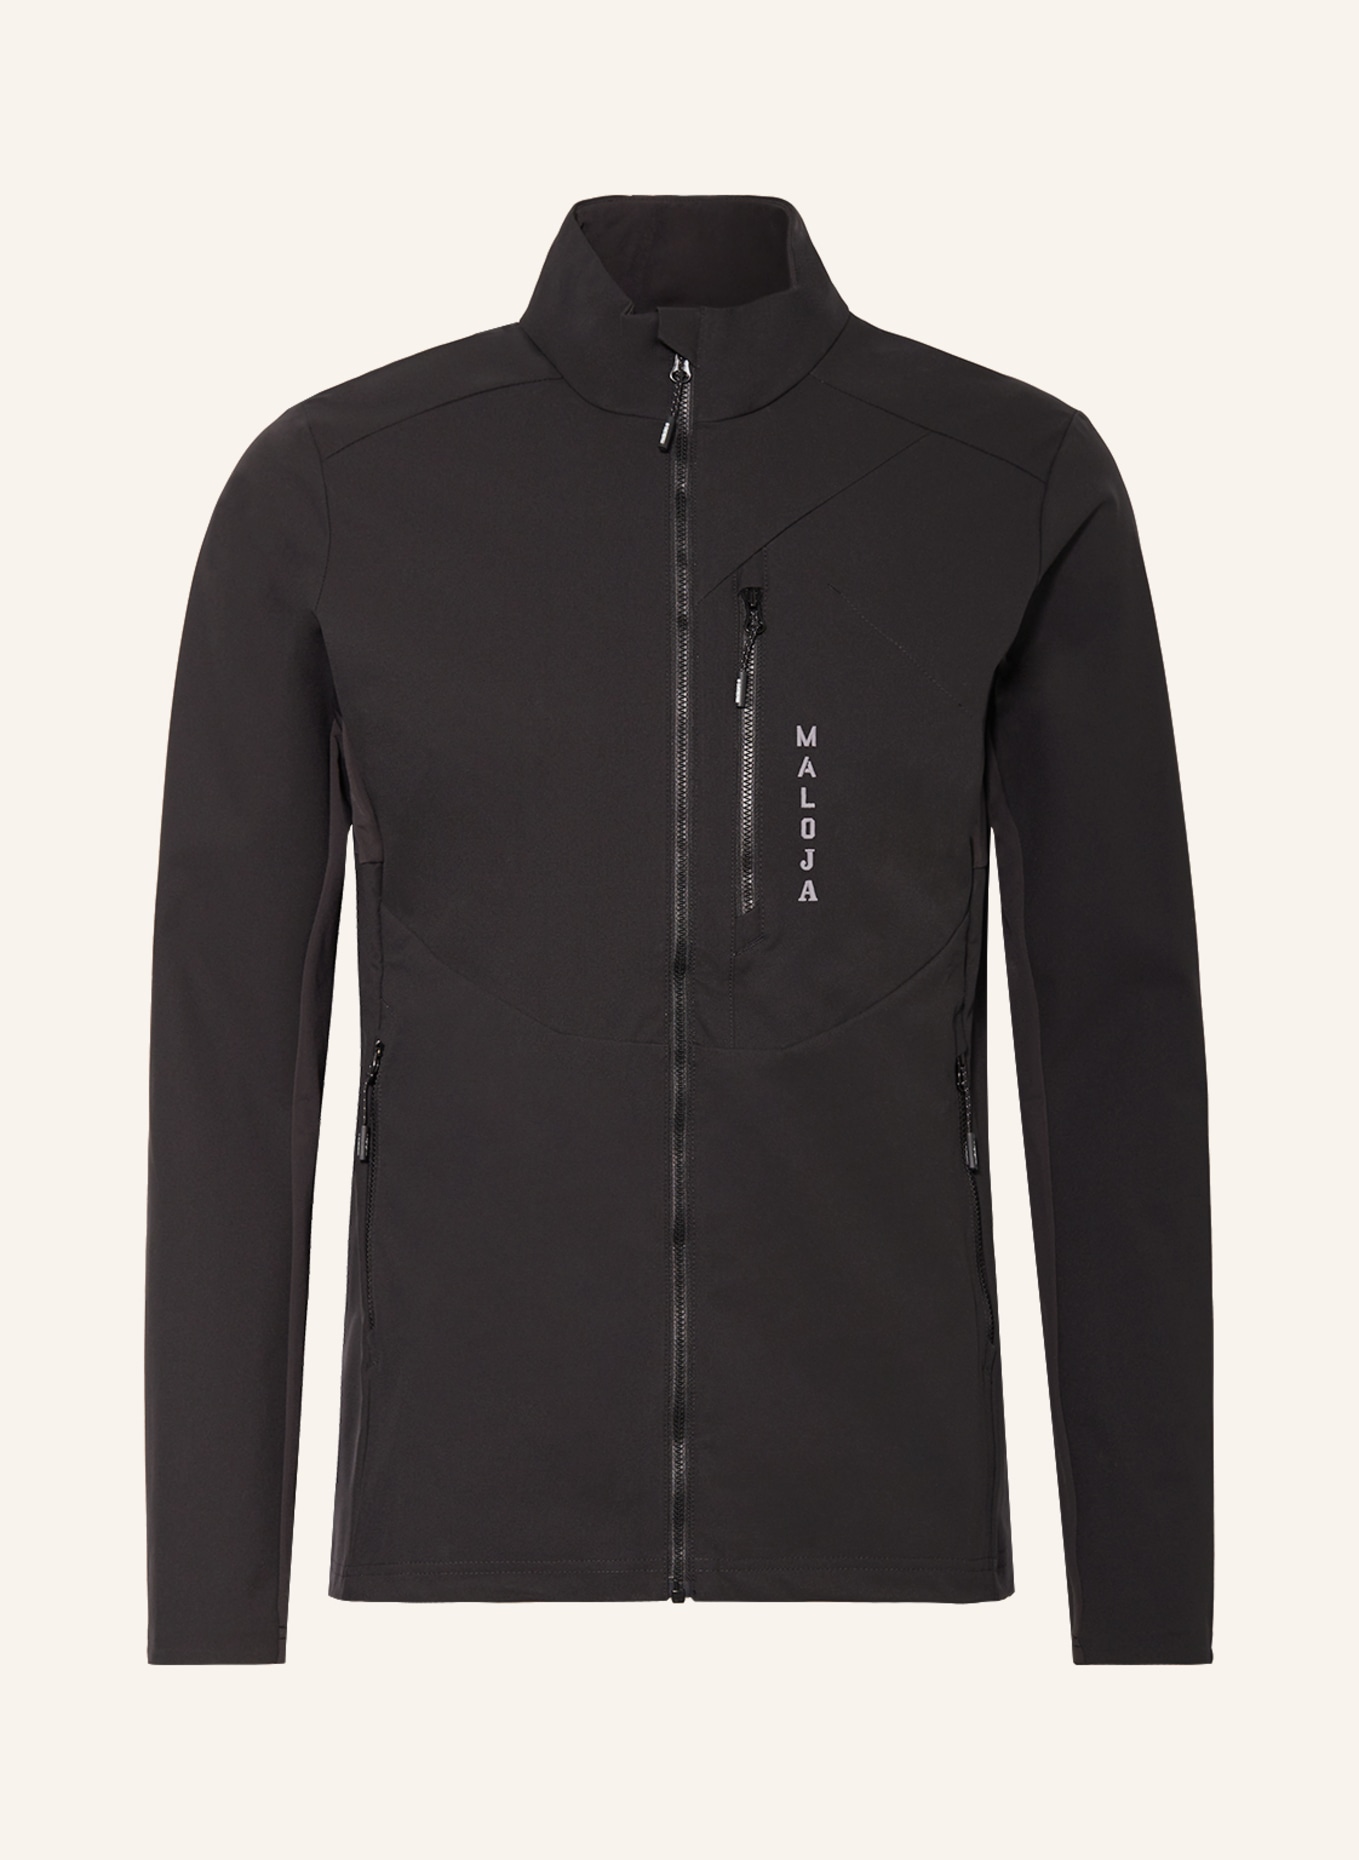 maloja Hybrid softshell jacket ALPELM., Color: BLACK (Image 1)